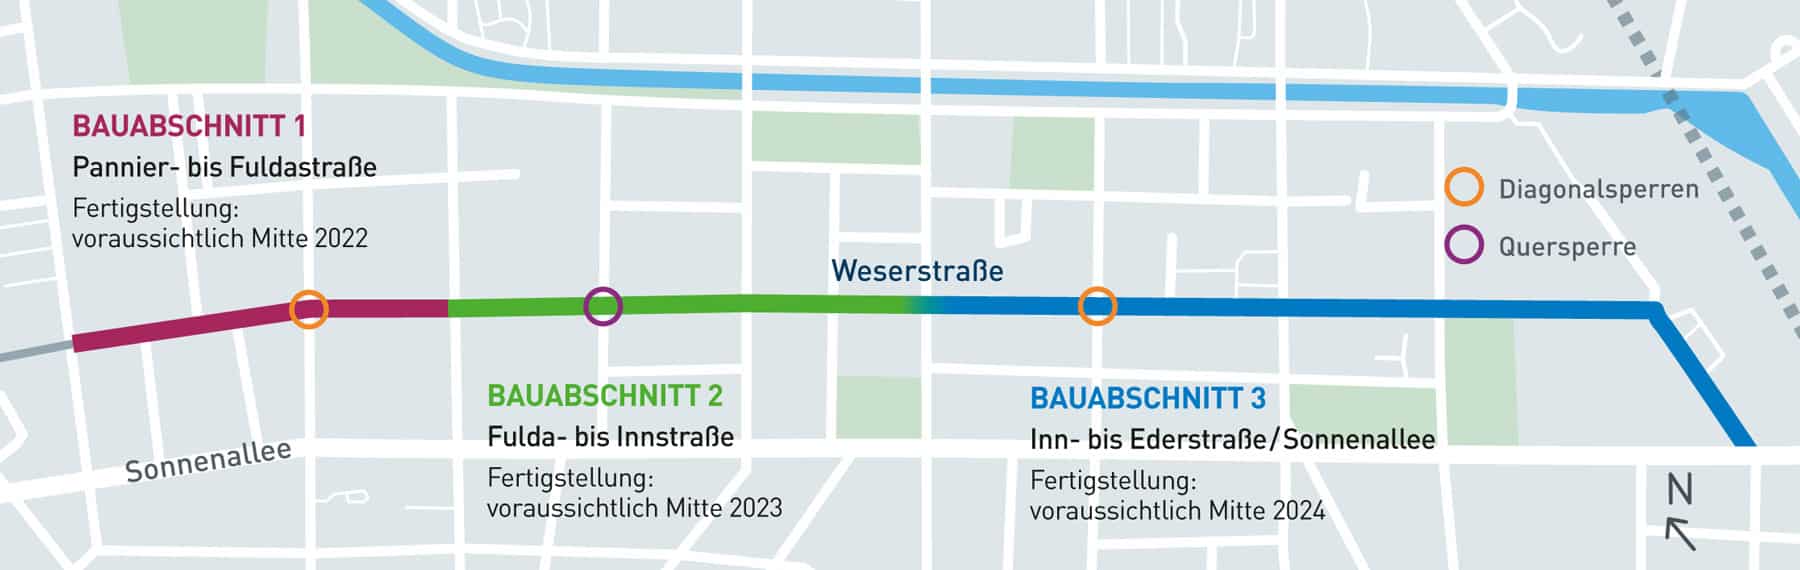 Bauabschnitte Weserstraße